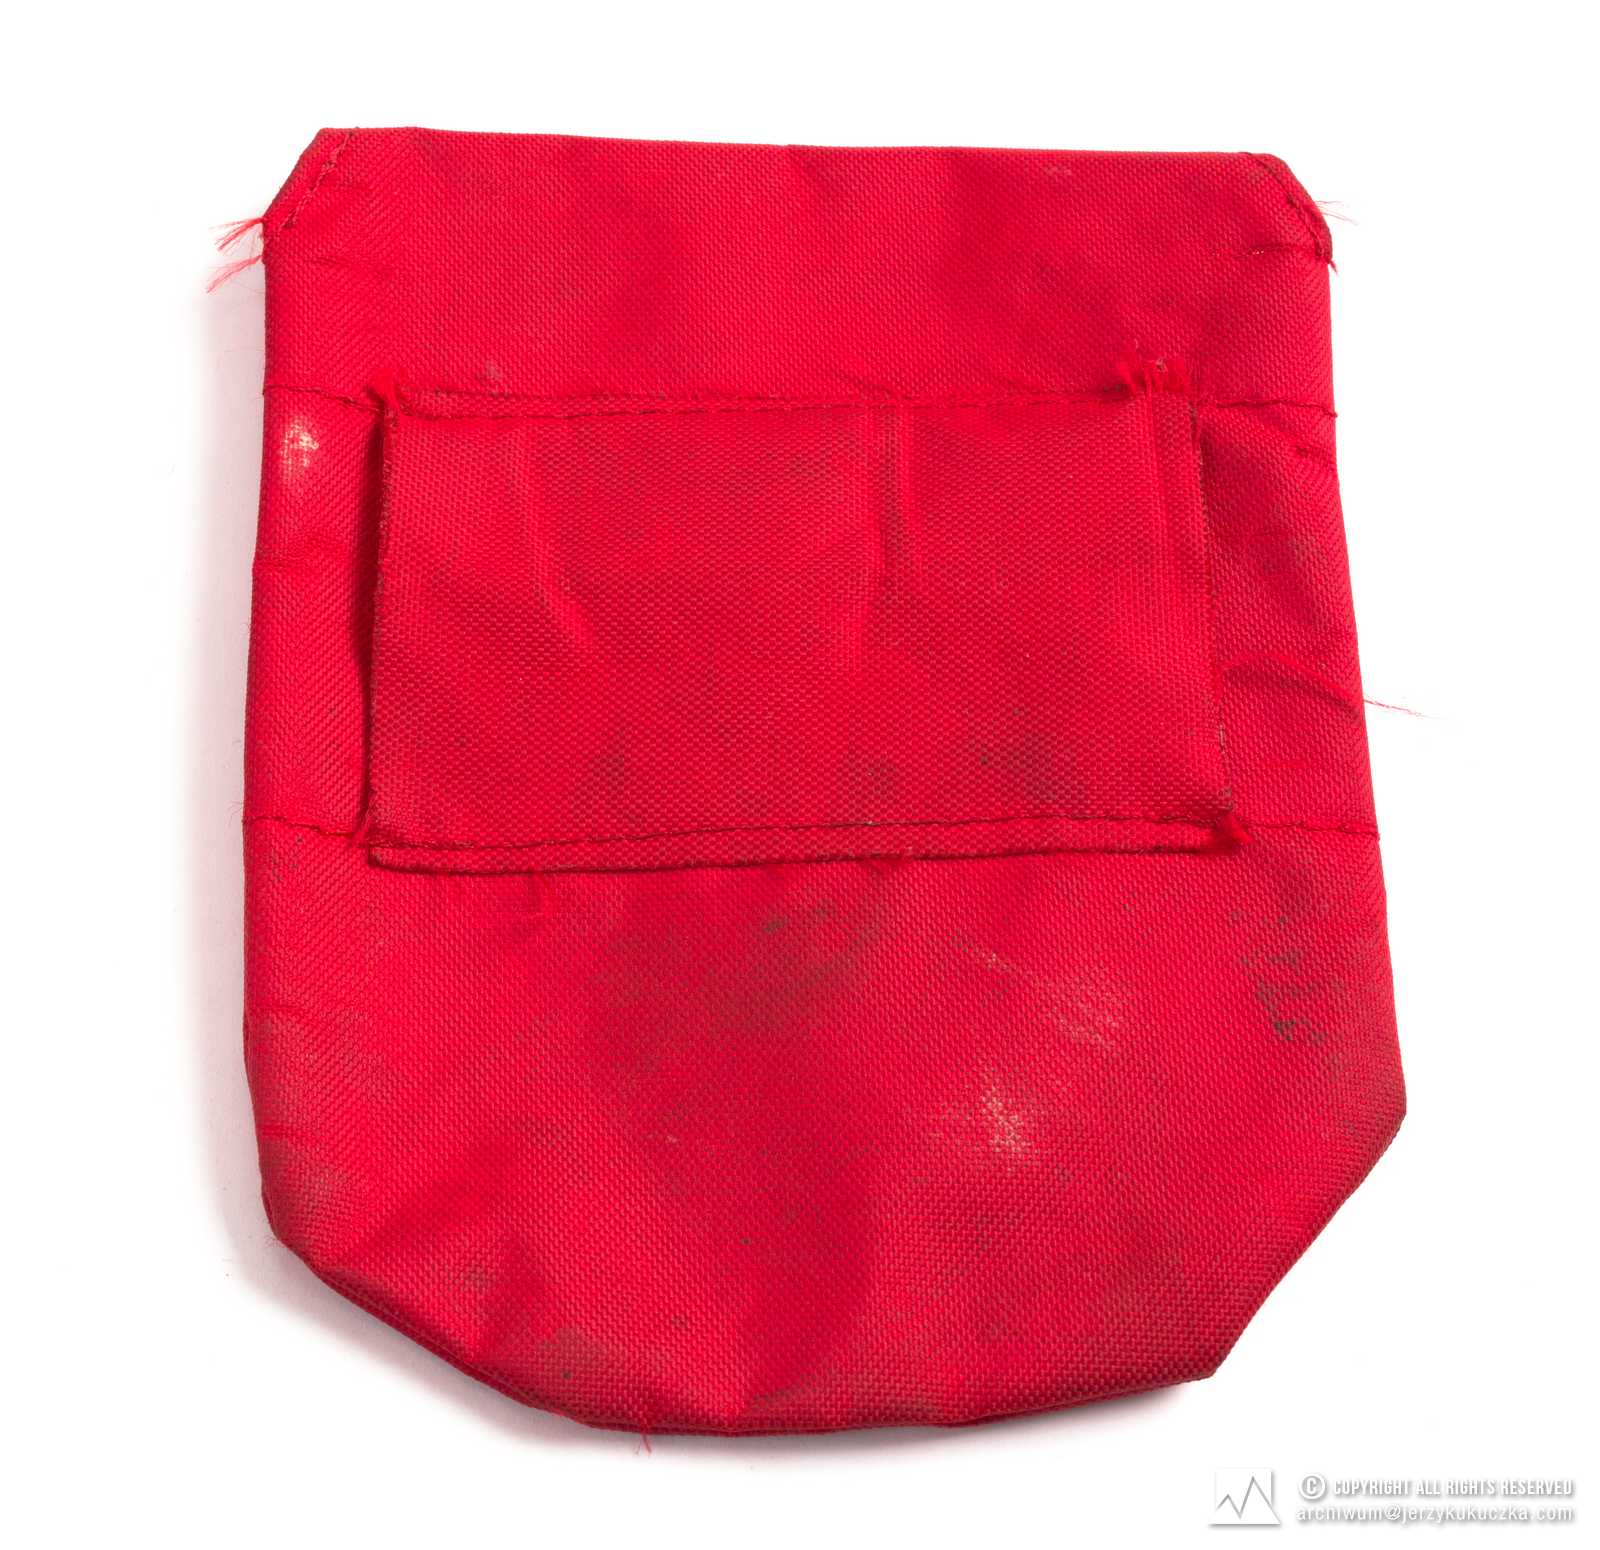 Saszetka firmy Camp. Czerwona, zapinana na guzik, do przewlekania przez pas, koloru czerwonego. Lata 60-80 XX w. CAMP